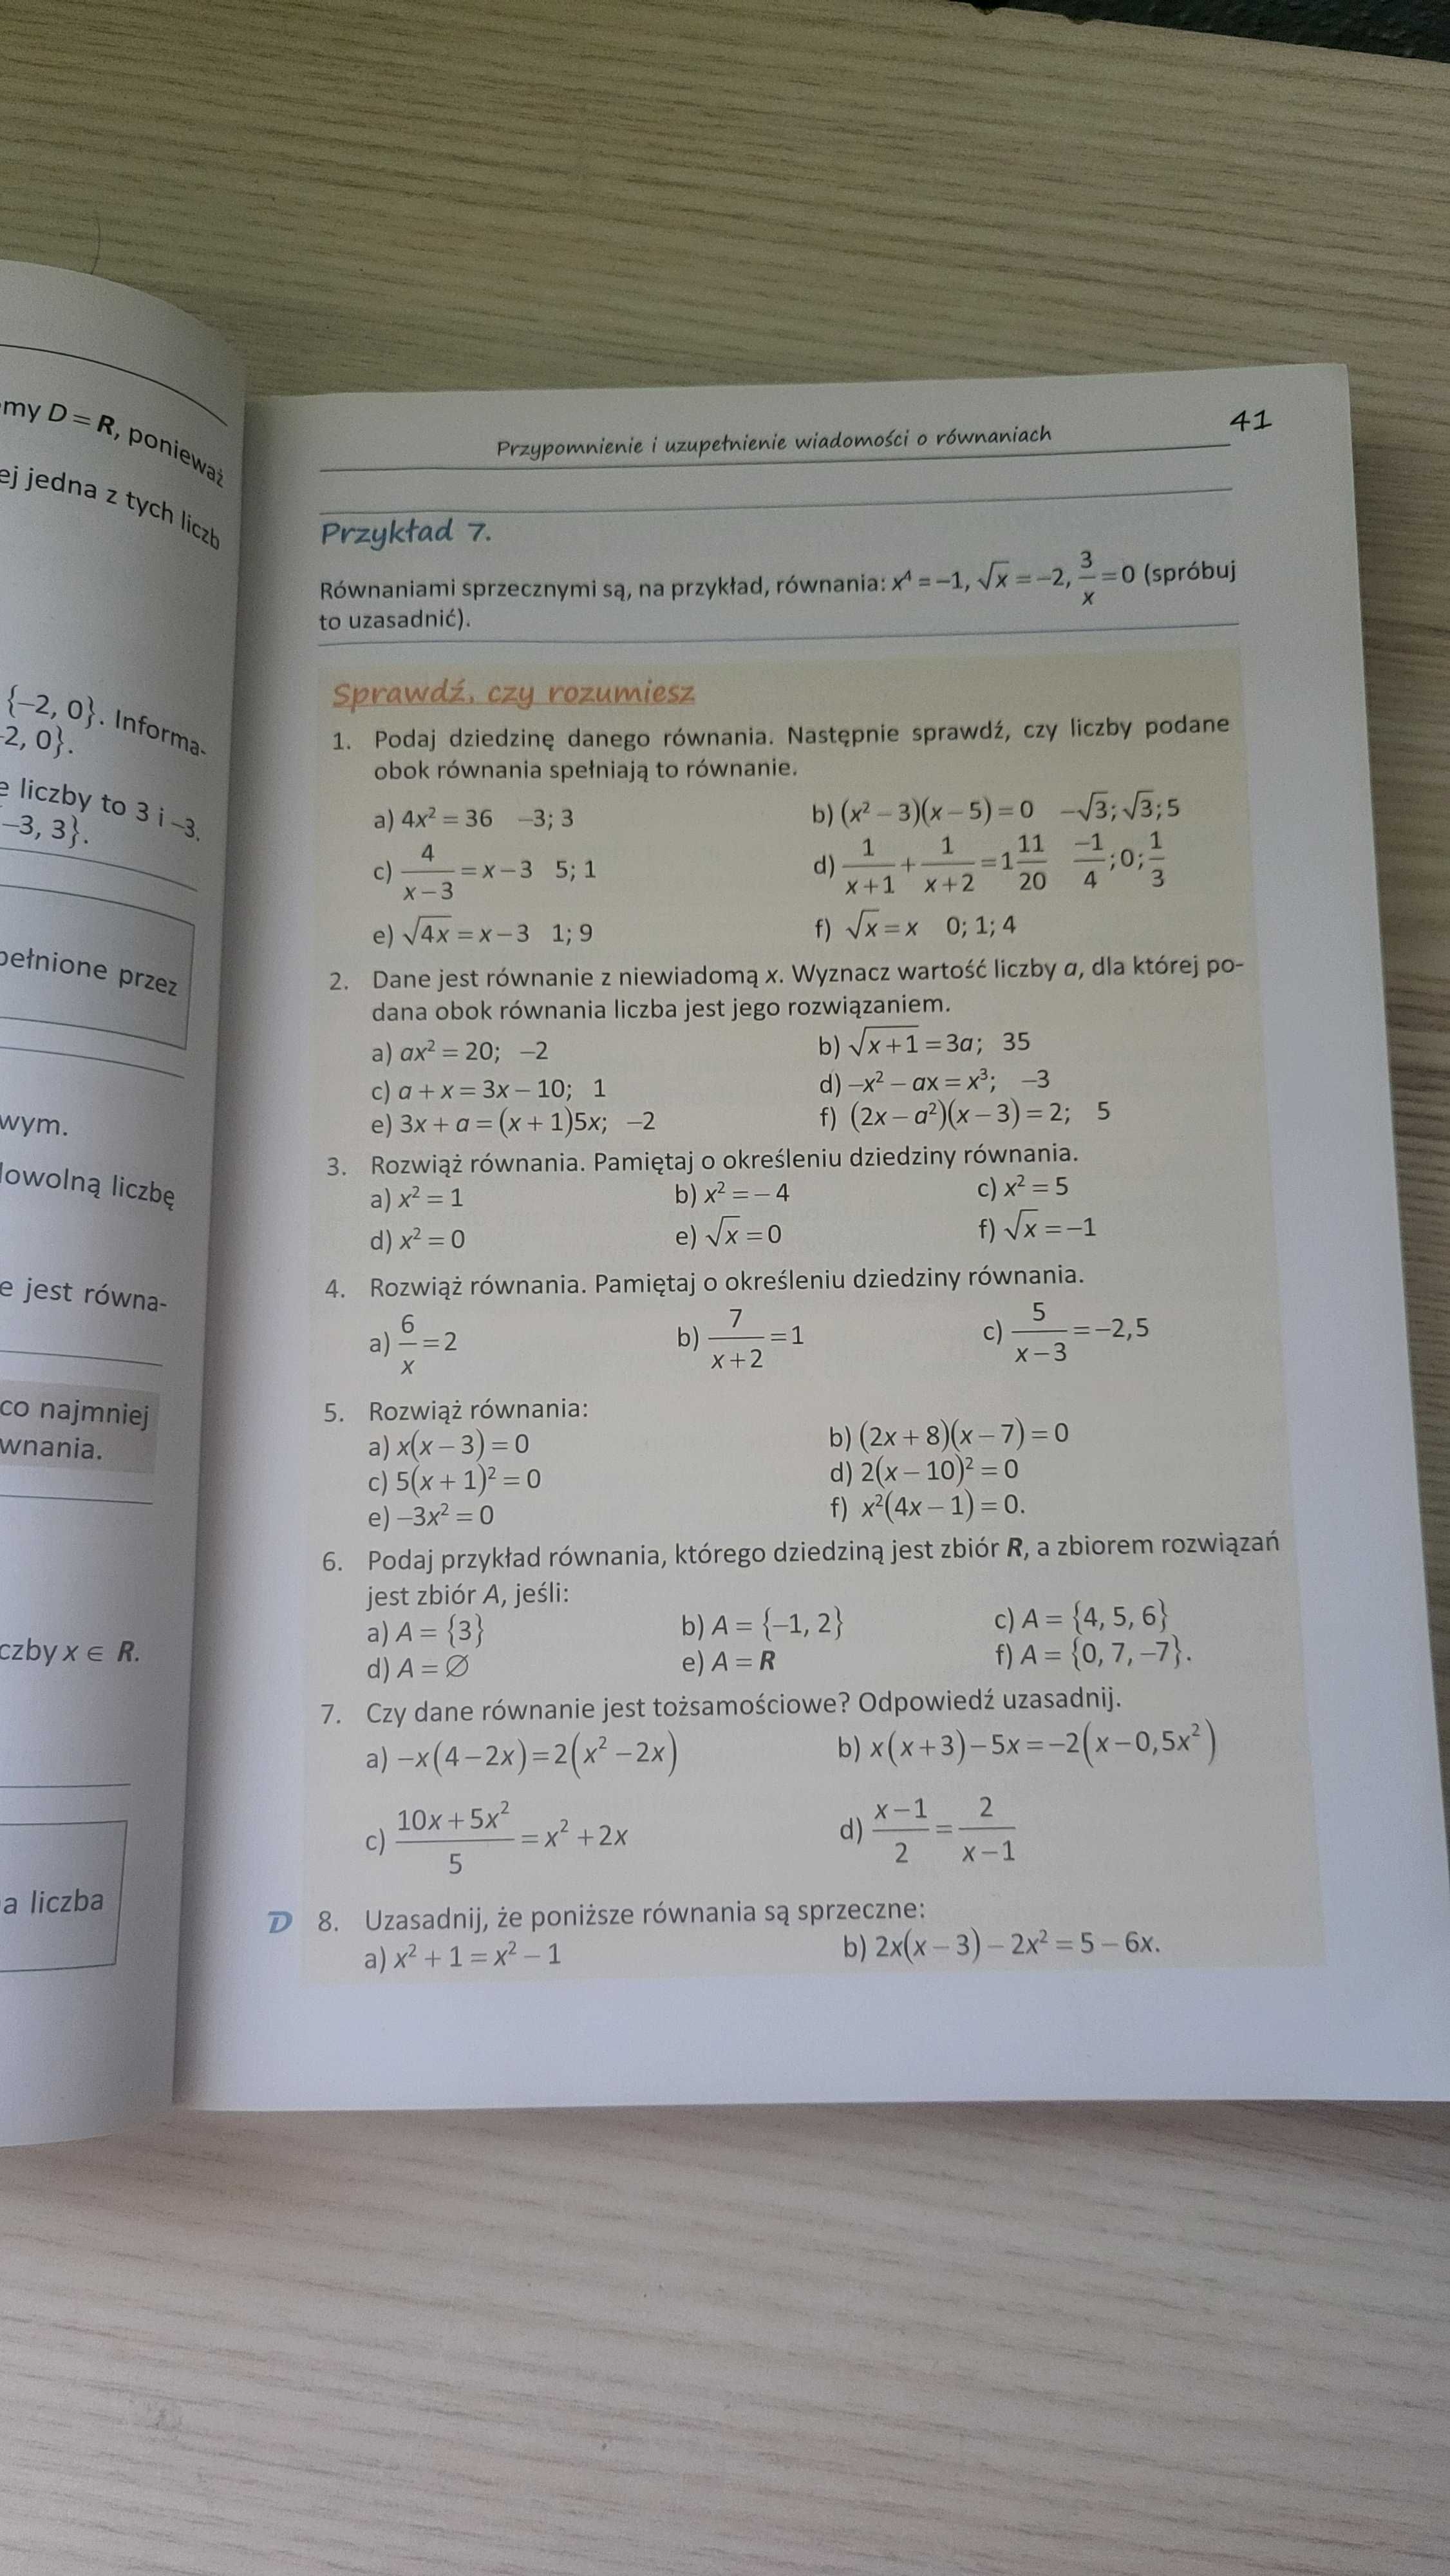 Matematyka 1 - zbiór zadań do liceów i techników/podręcznik PAZDRO